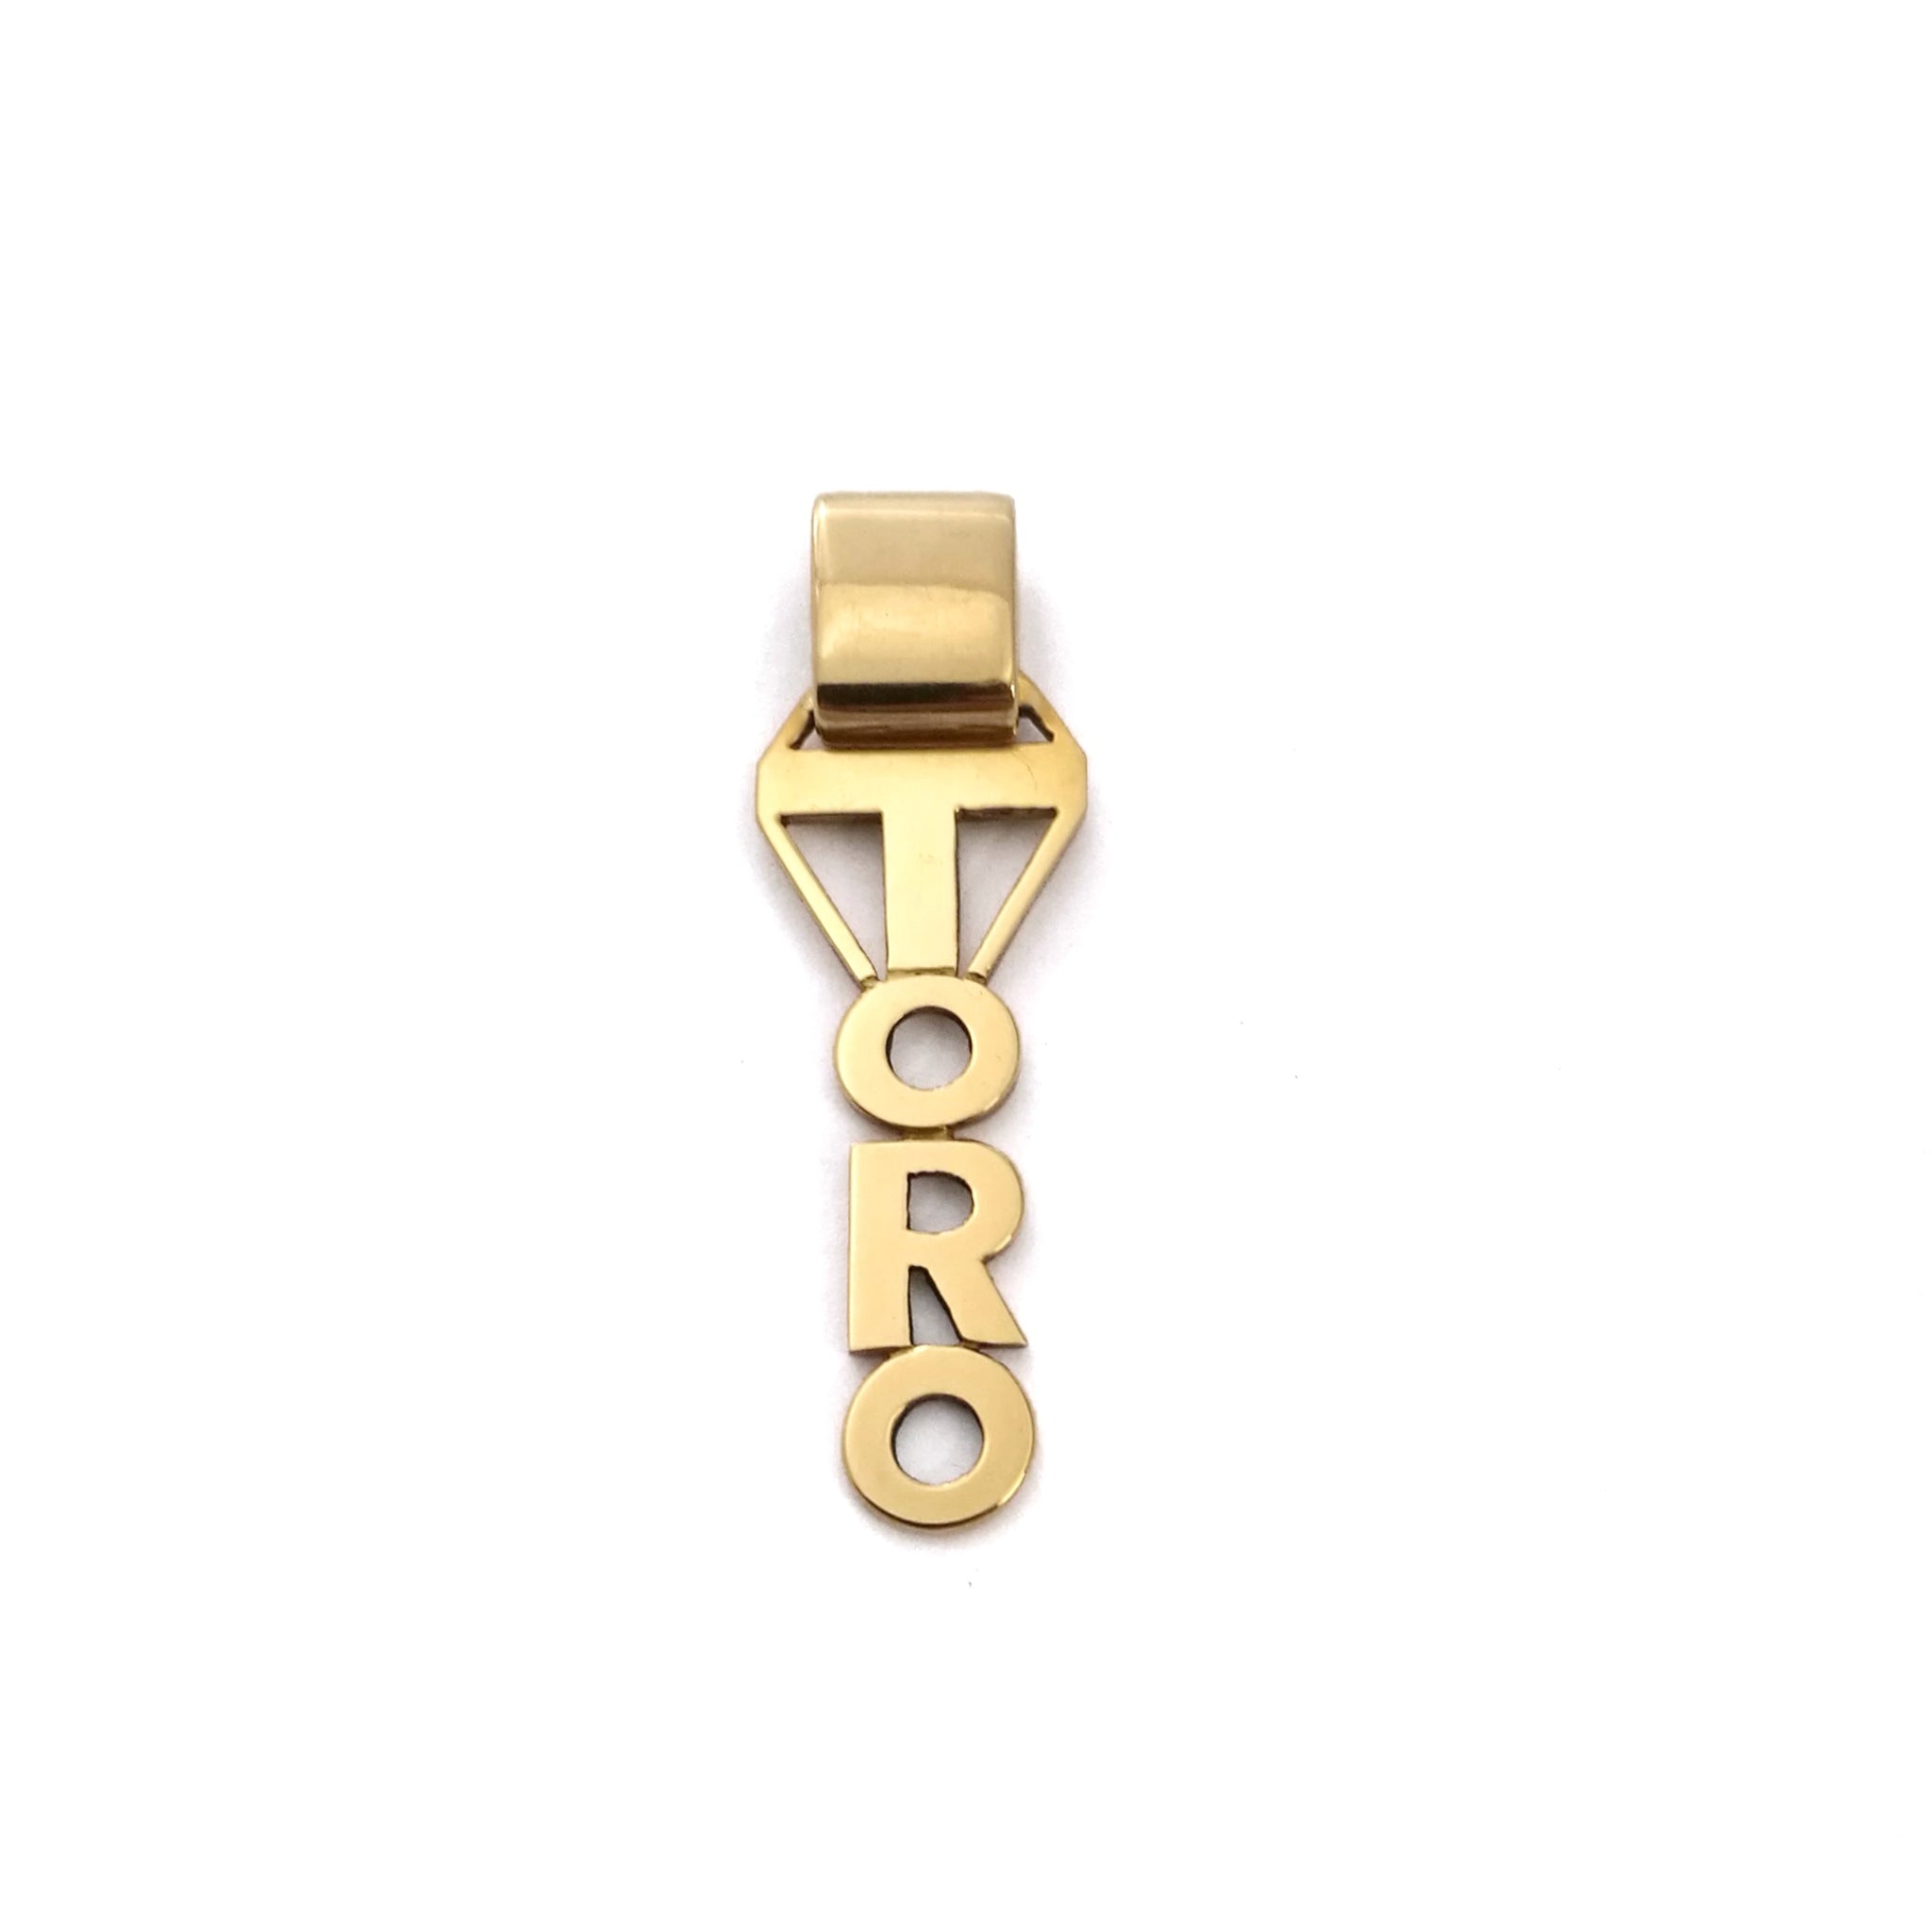 Mariatti - Ciondolo Toro unico in oro - Gioielleria Mariatti Torino - Gioielli e oggetti del Toro